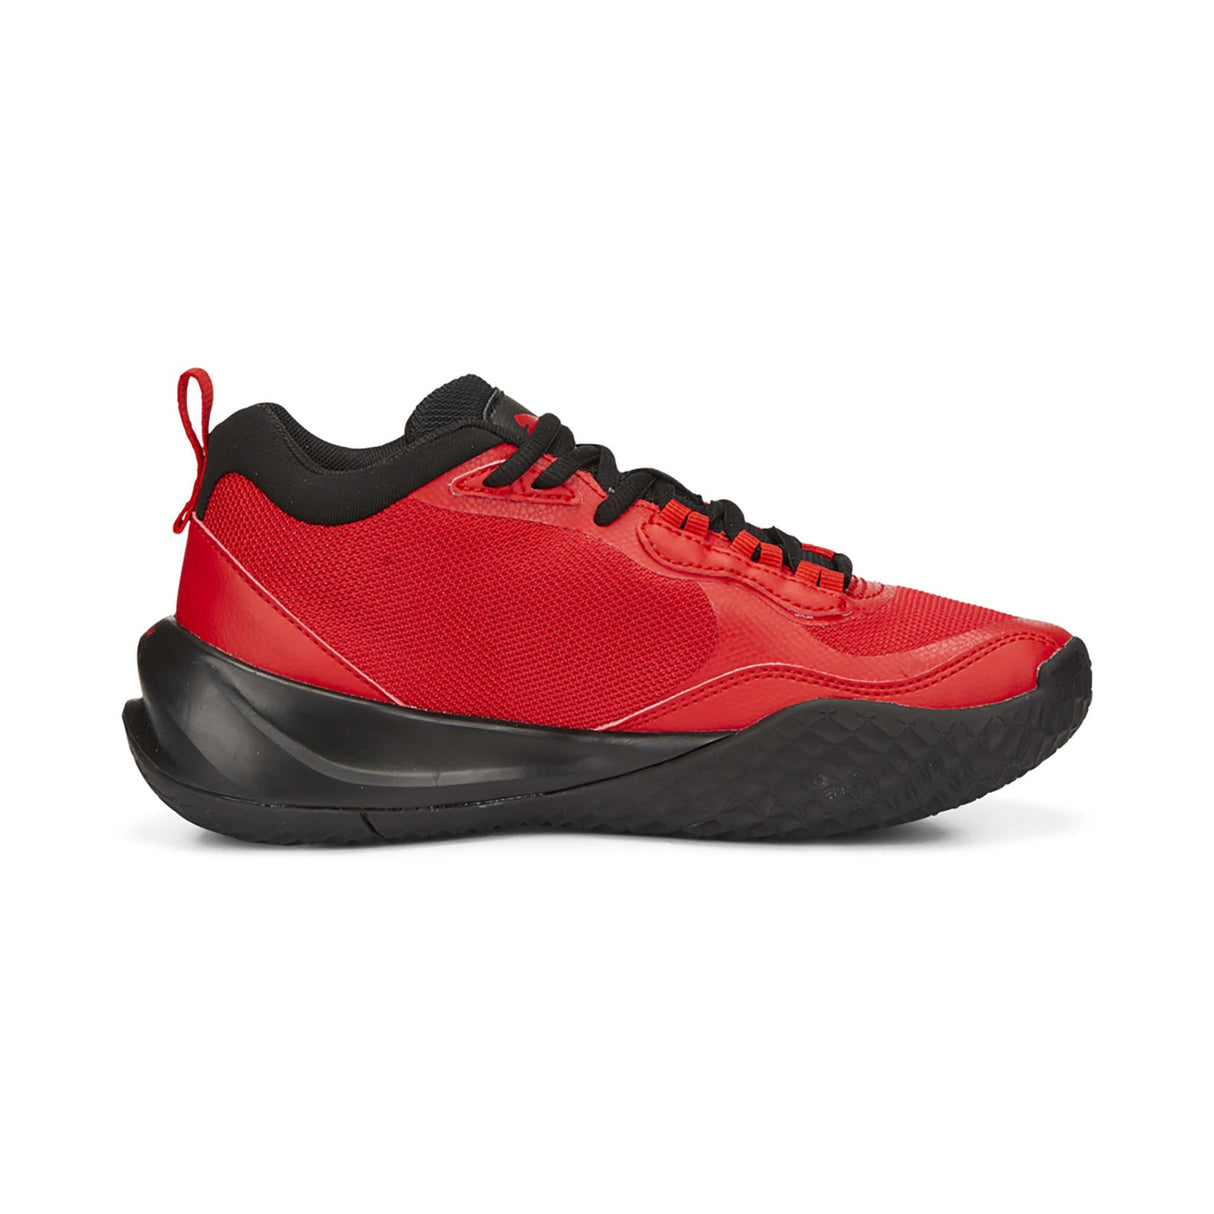 Puma Playmaker Pro chaussures de basketball enfant lateral- rouge / noir